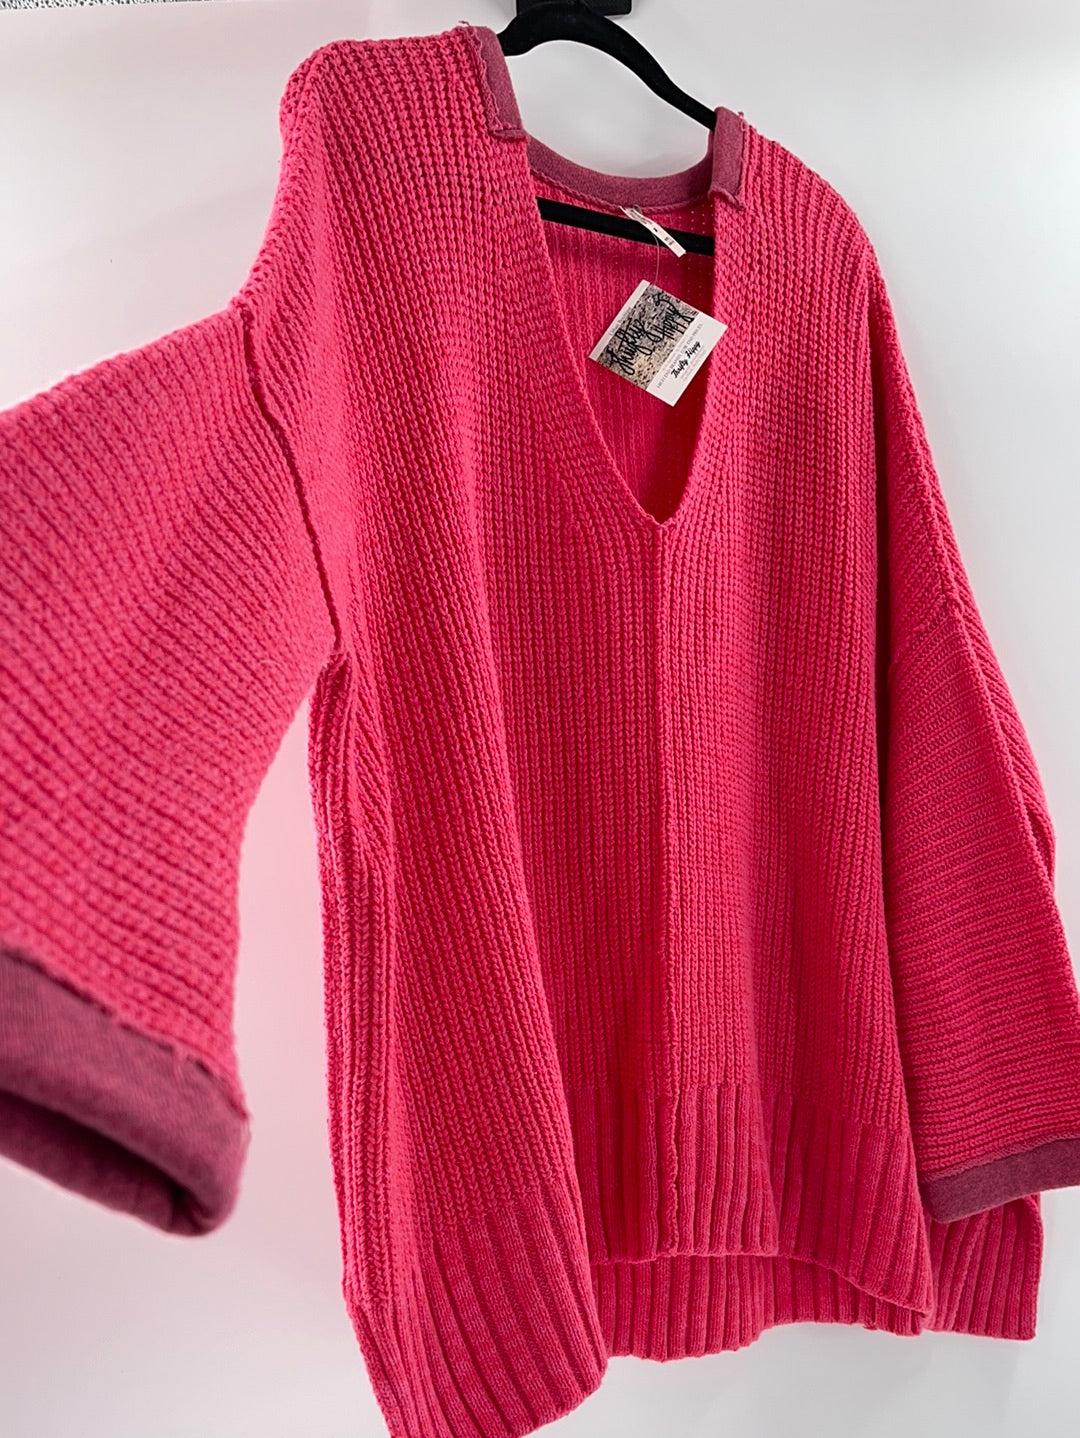 Free People Bright Pink Oversized Sweater V Neck ( Size Medium/Large)